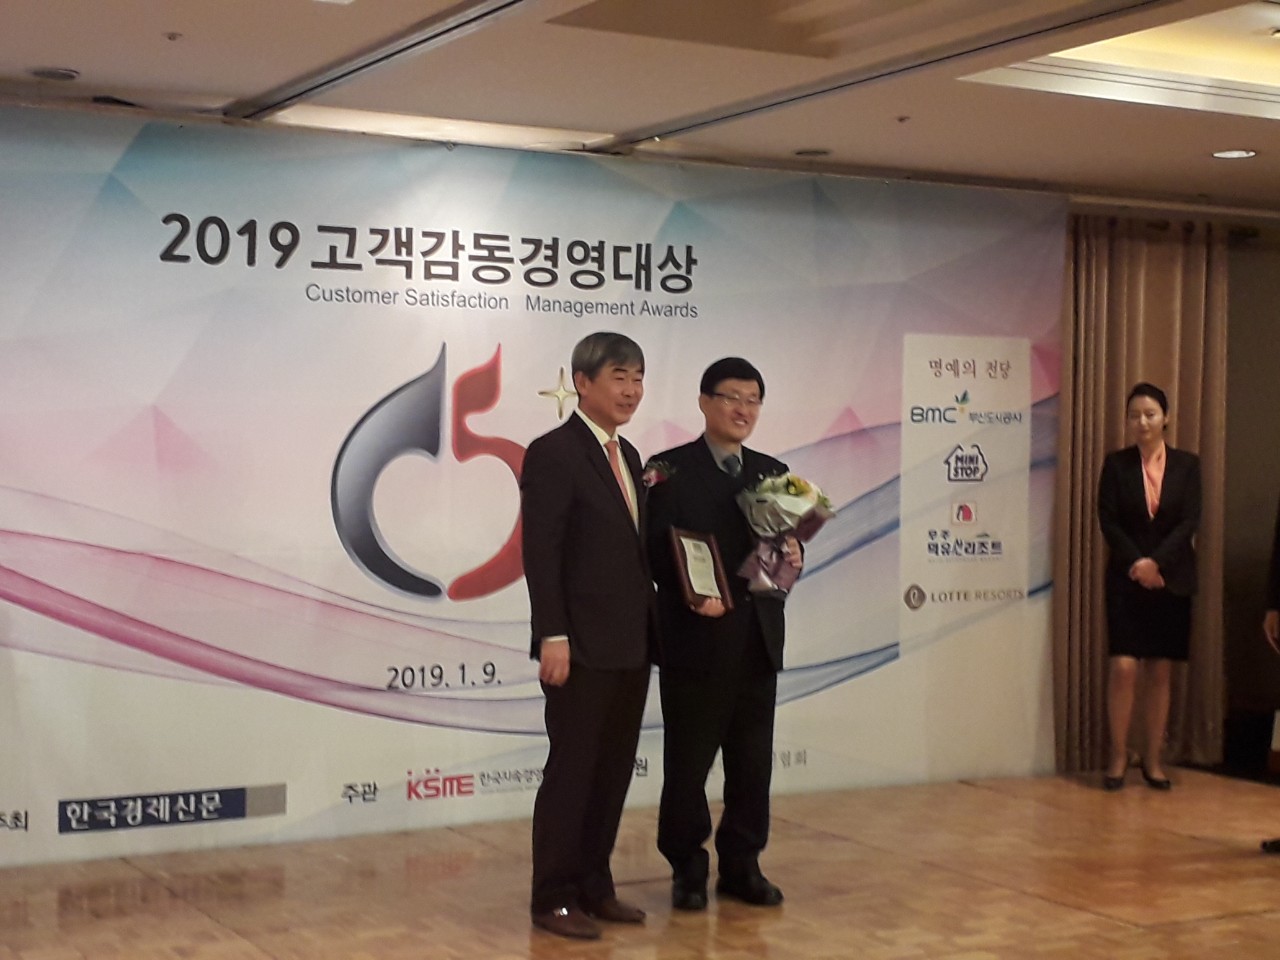 [19.01.09.] FIRA, 2019 고객감동경영대상 공공행정서비스부문 대상 수상